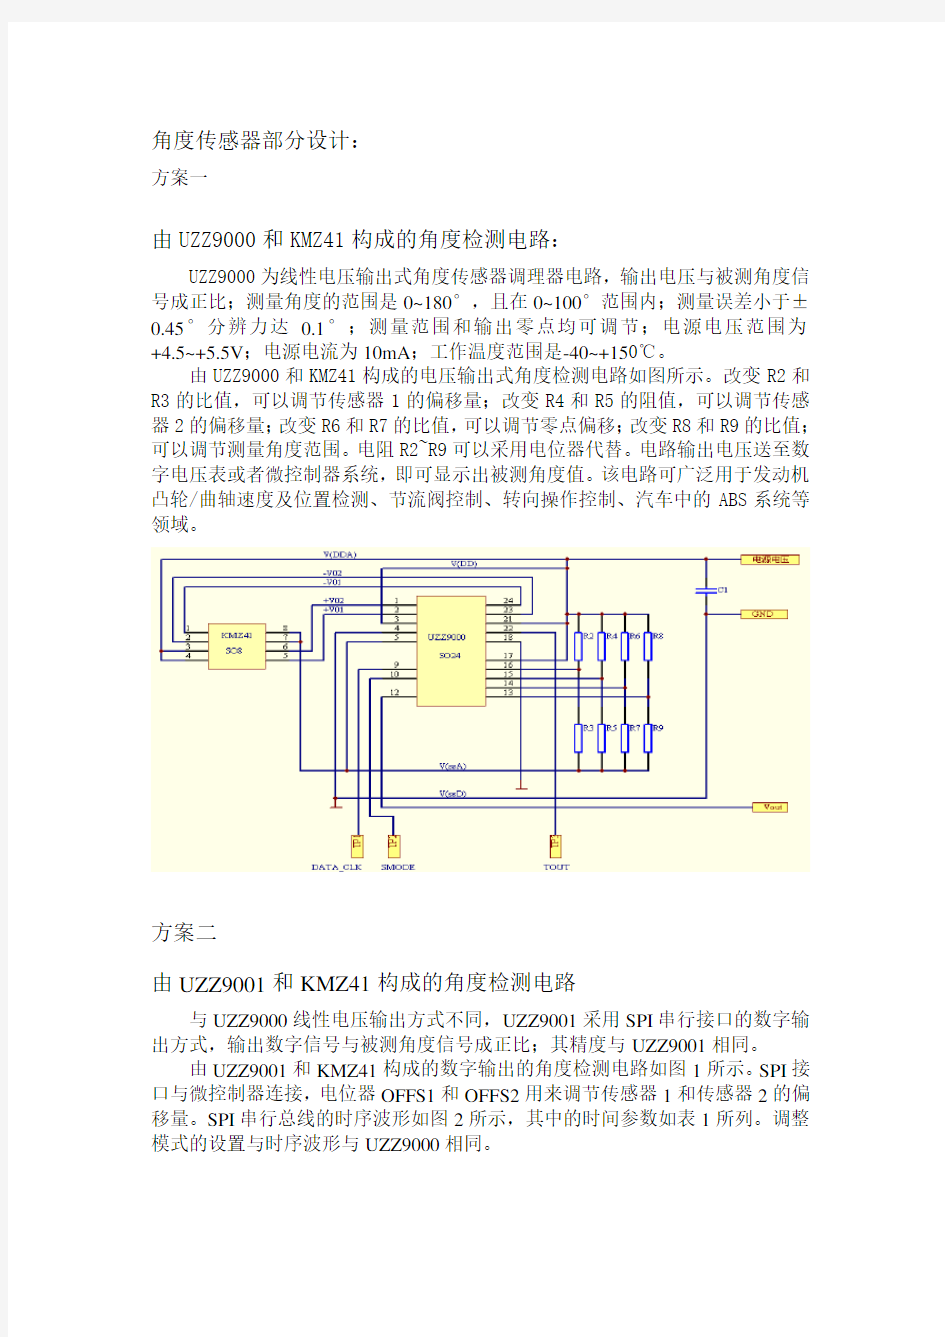 角度传感器应用电路设计档